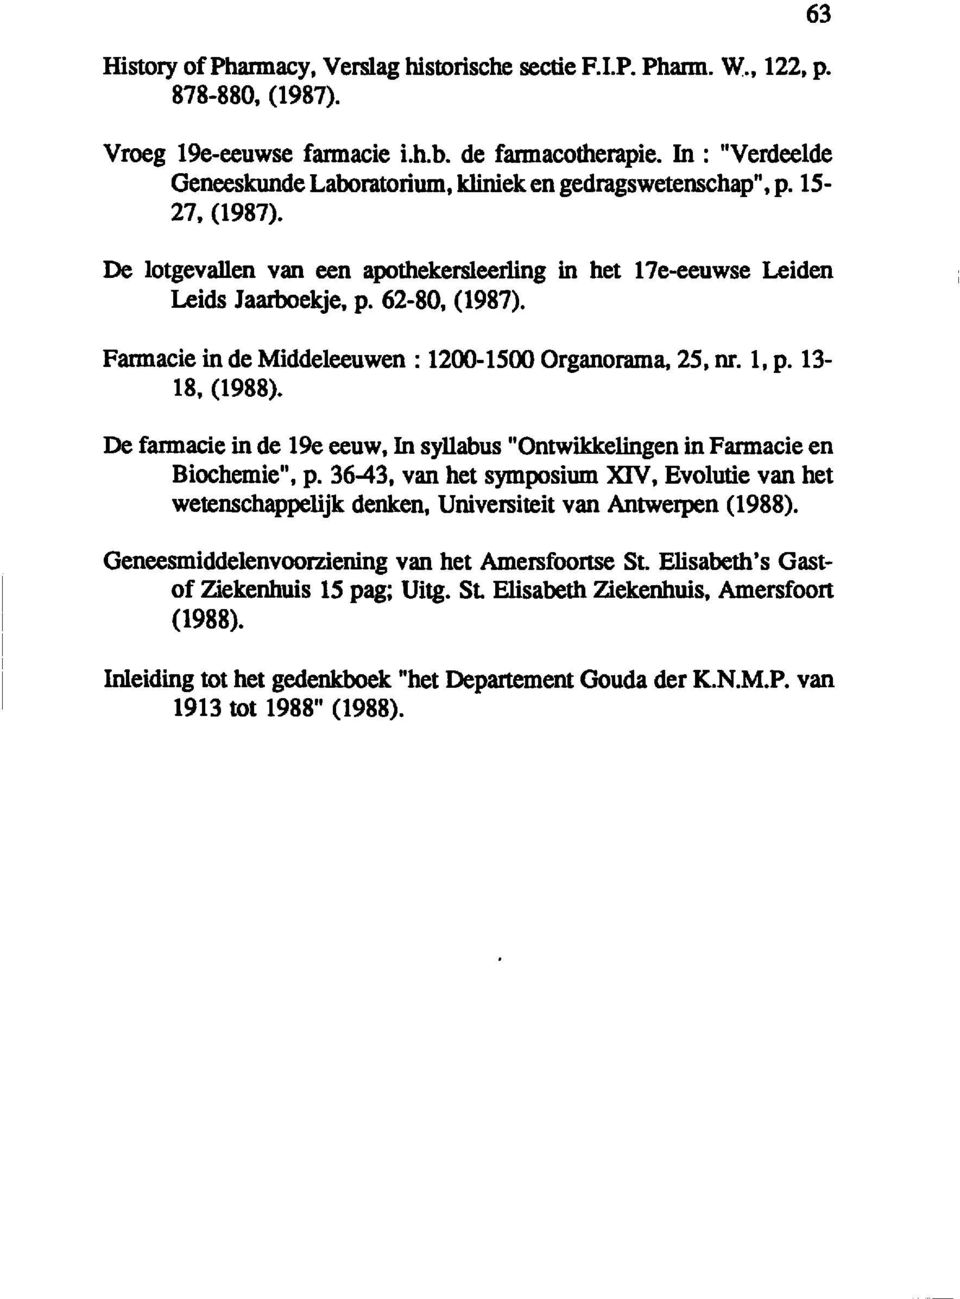 Fannacie in de Middeleeuwen: 1200-1500 Organorama, 25, nr. 1, p. 13 18, (1988). De farmacie in de 1ge eeuw, In syllabus "Ontwikkelingen in Farmacie en Biochemie", p.